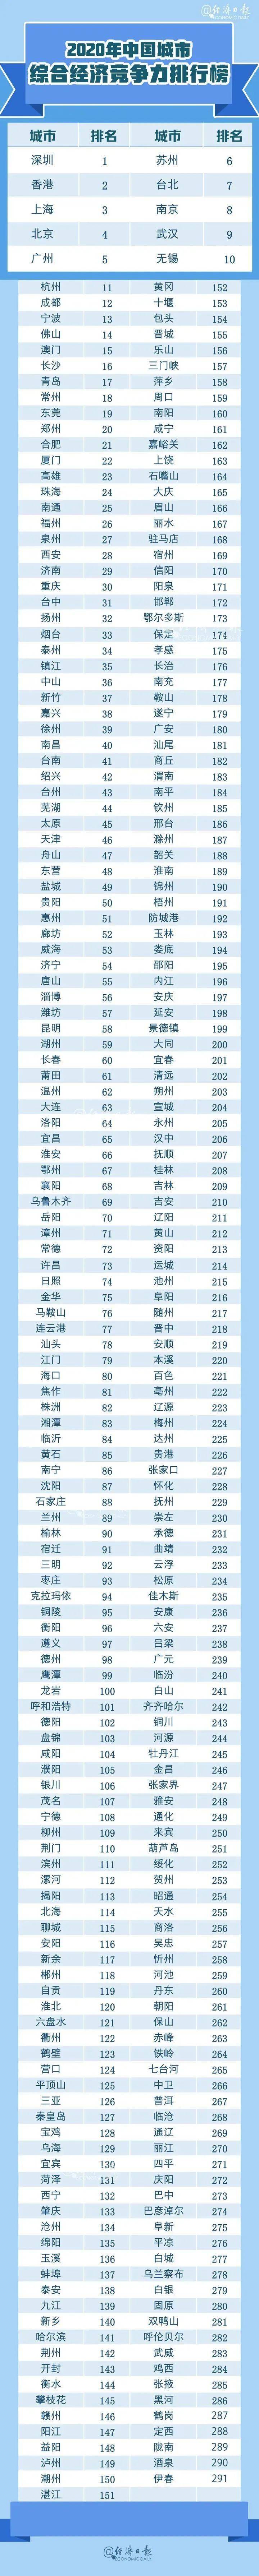 2020中房网排名_2020中国大学最新排名,清华第一,北大第二,南大力压武大(2)